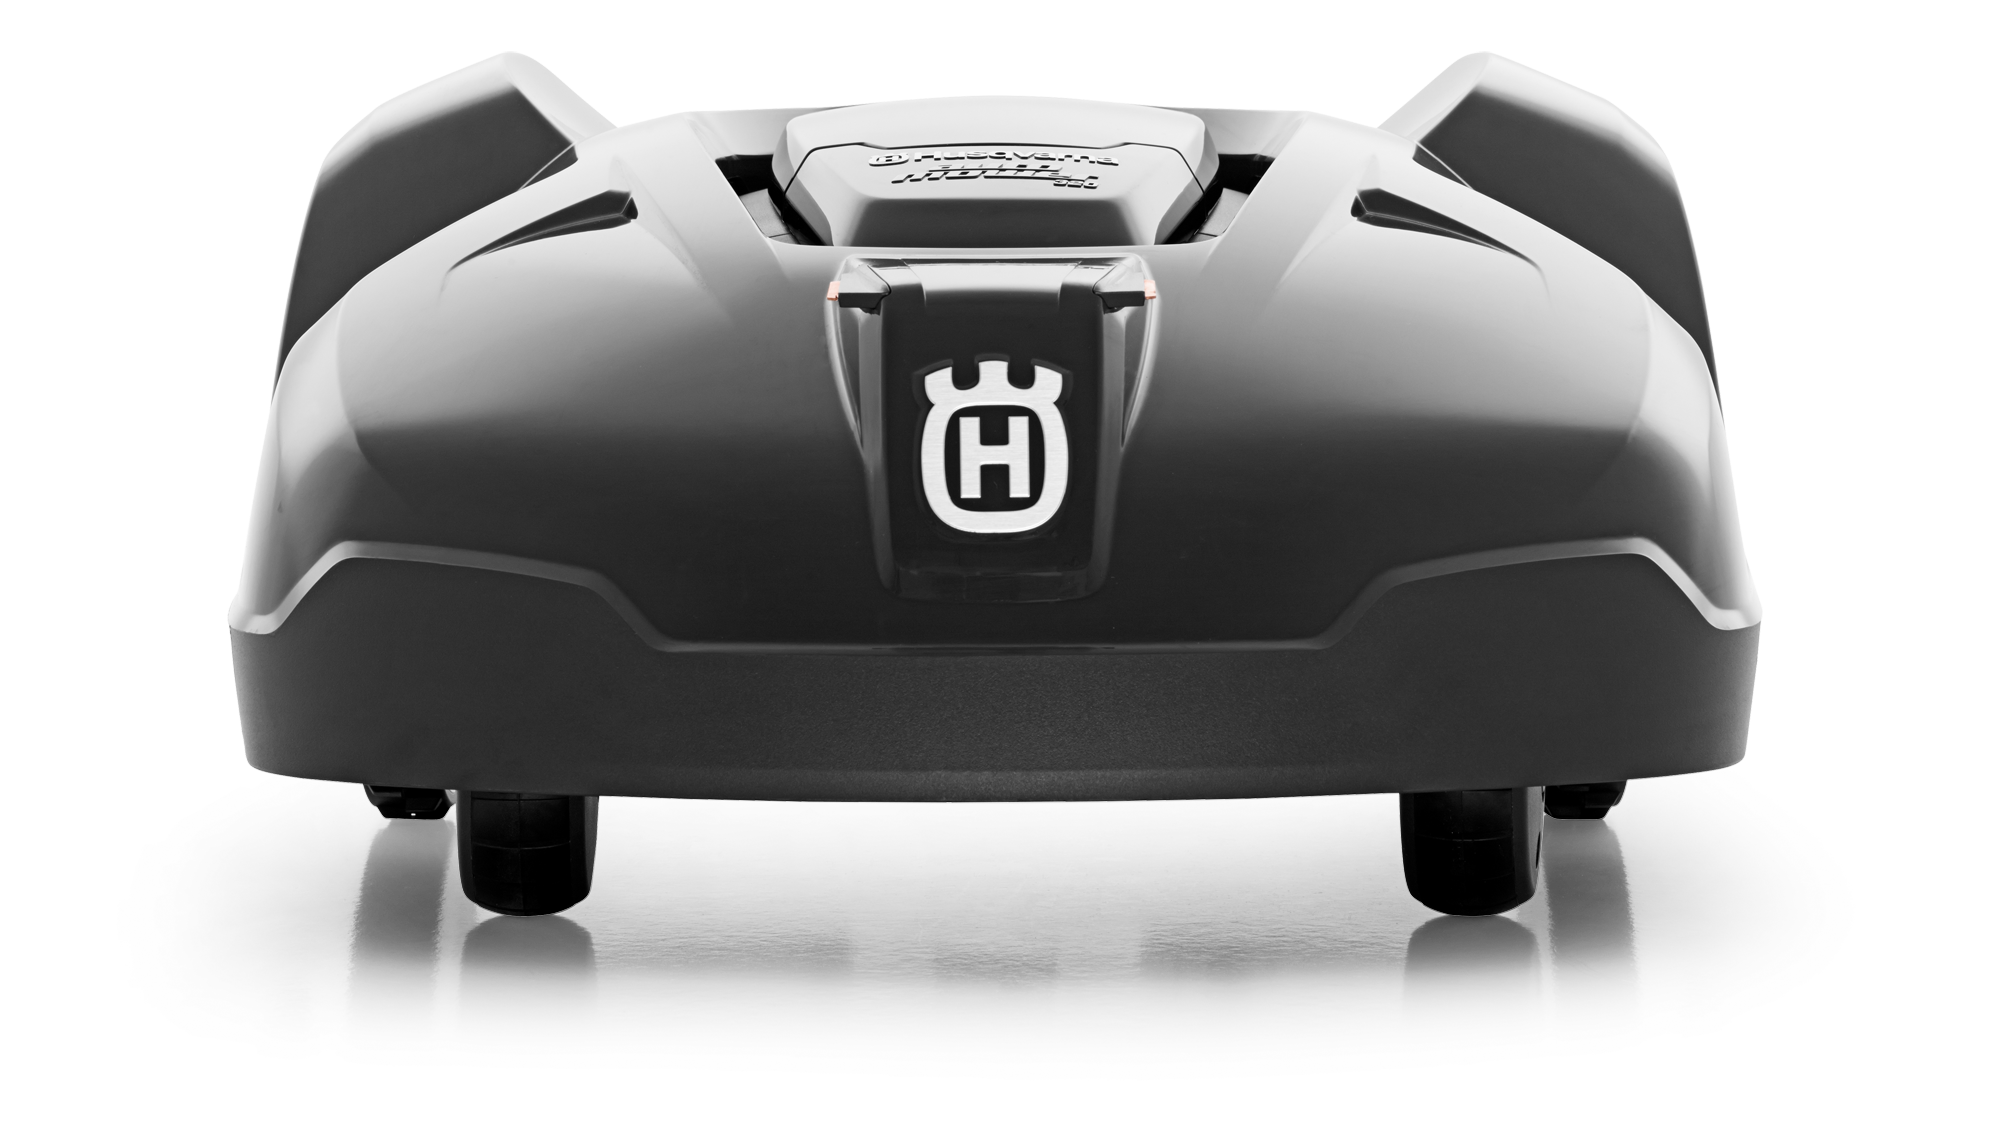 Melns Husqvarna zāles pļāvējs robots – Automower 420 modelis, skats no aizmugures